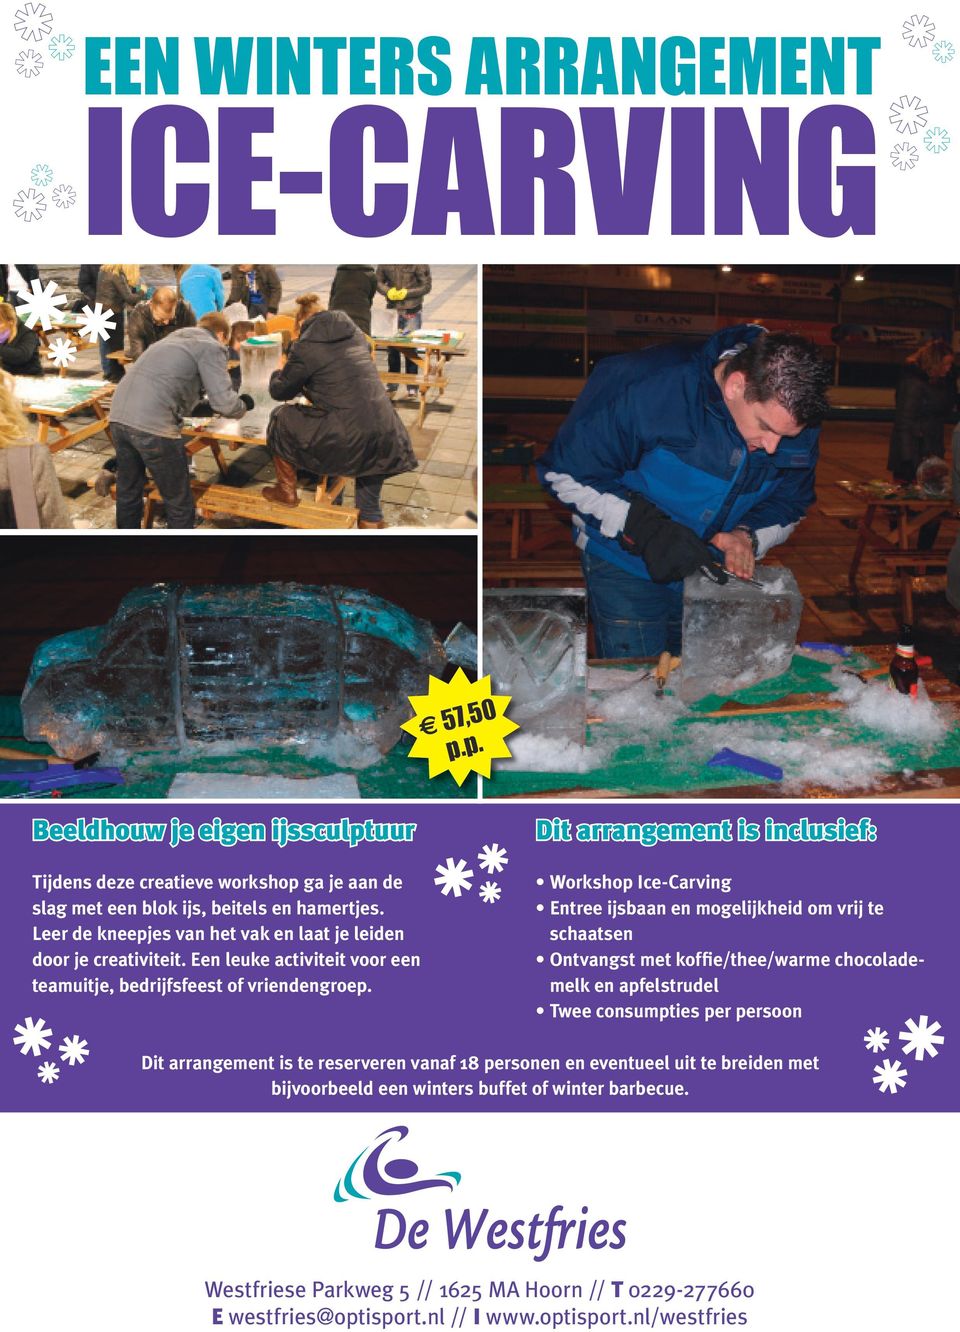 Dit arrangement is inclusief: Workshop Ice-Carving Entree ijsbaan en mogelijkheid om vrij te schaatsen Ontvangst met koffie/thee/warme chocolademelk en apfelstrudel Twee consumpties per